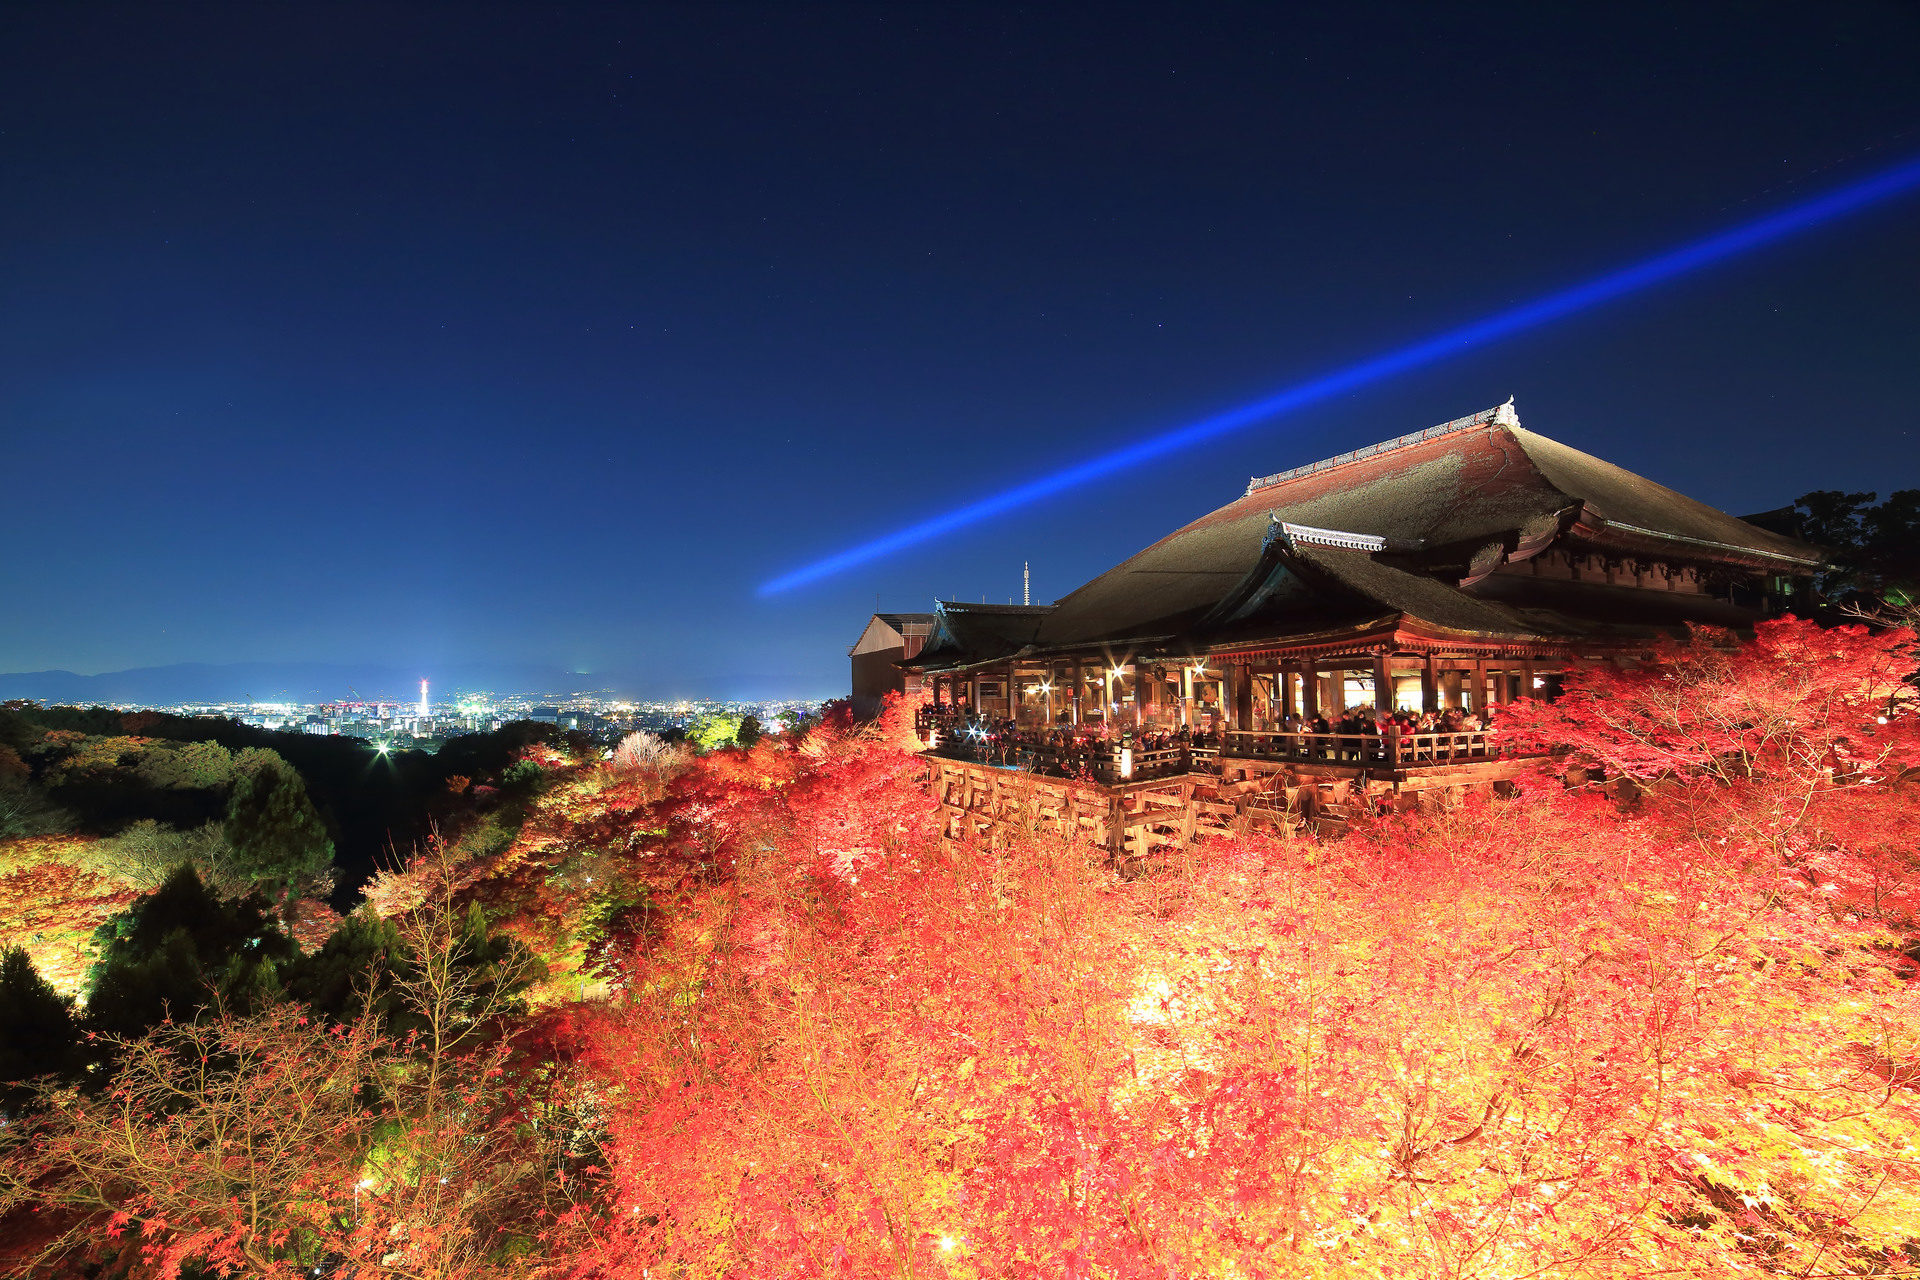 京都で贅沢な秋の夜を満喫しませんか 京都の厳選秋のライトアップ名所をご紹介します Caedekyoto カエデ京都 紅葉と伝統美を引き継ぐバッグ